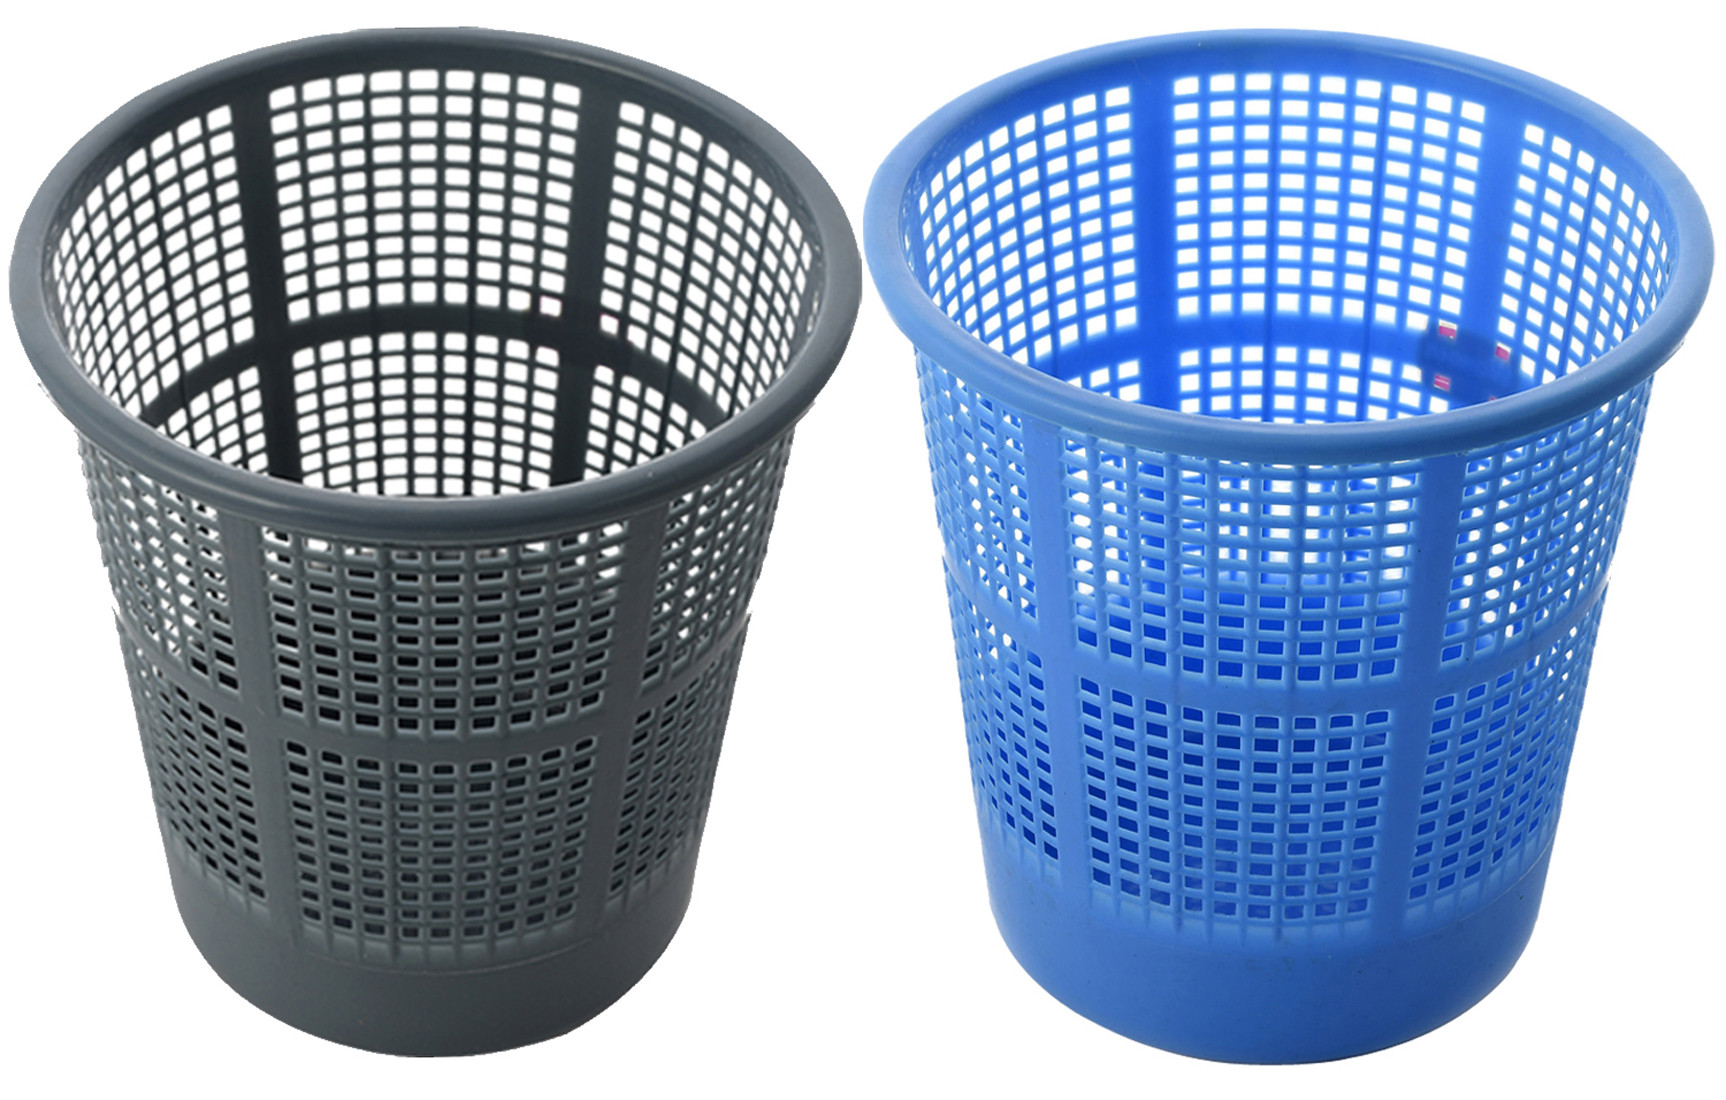 Kuber Industries Plastic Mesh Dustbin Garbage Bin for Office use, School, Bedroom,Kids Room, Home, Multi Purpose,5 Liters (Blue & Grey)